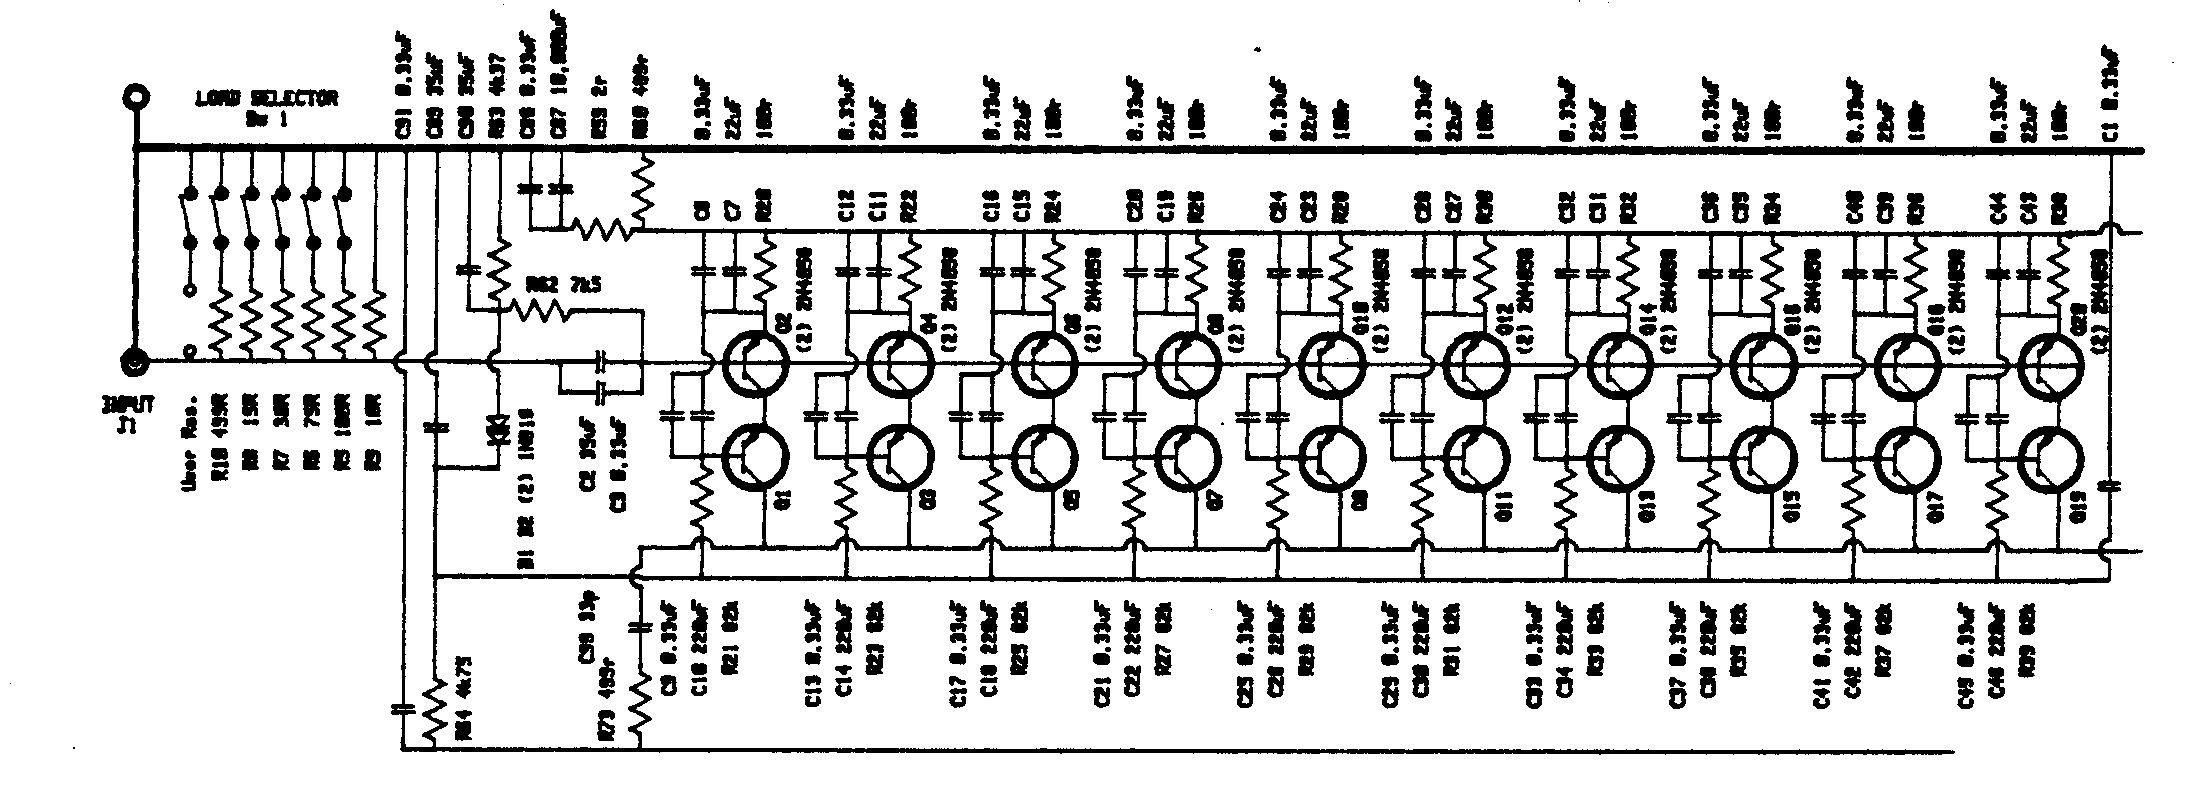 999 Input Stage Schematic